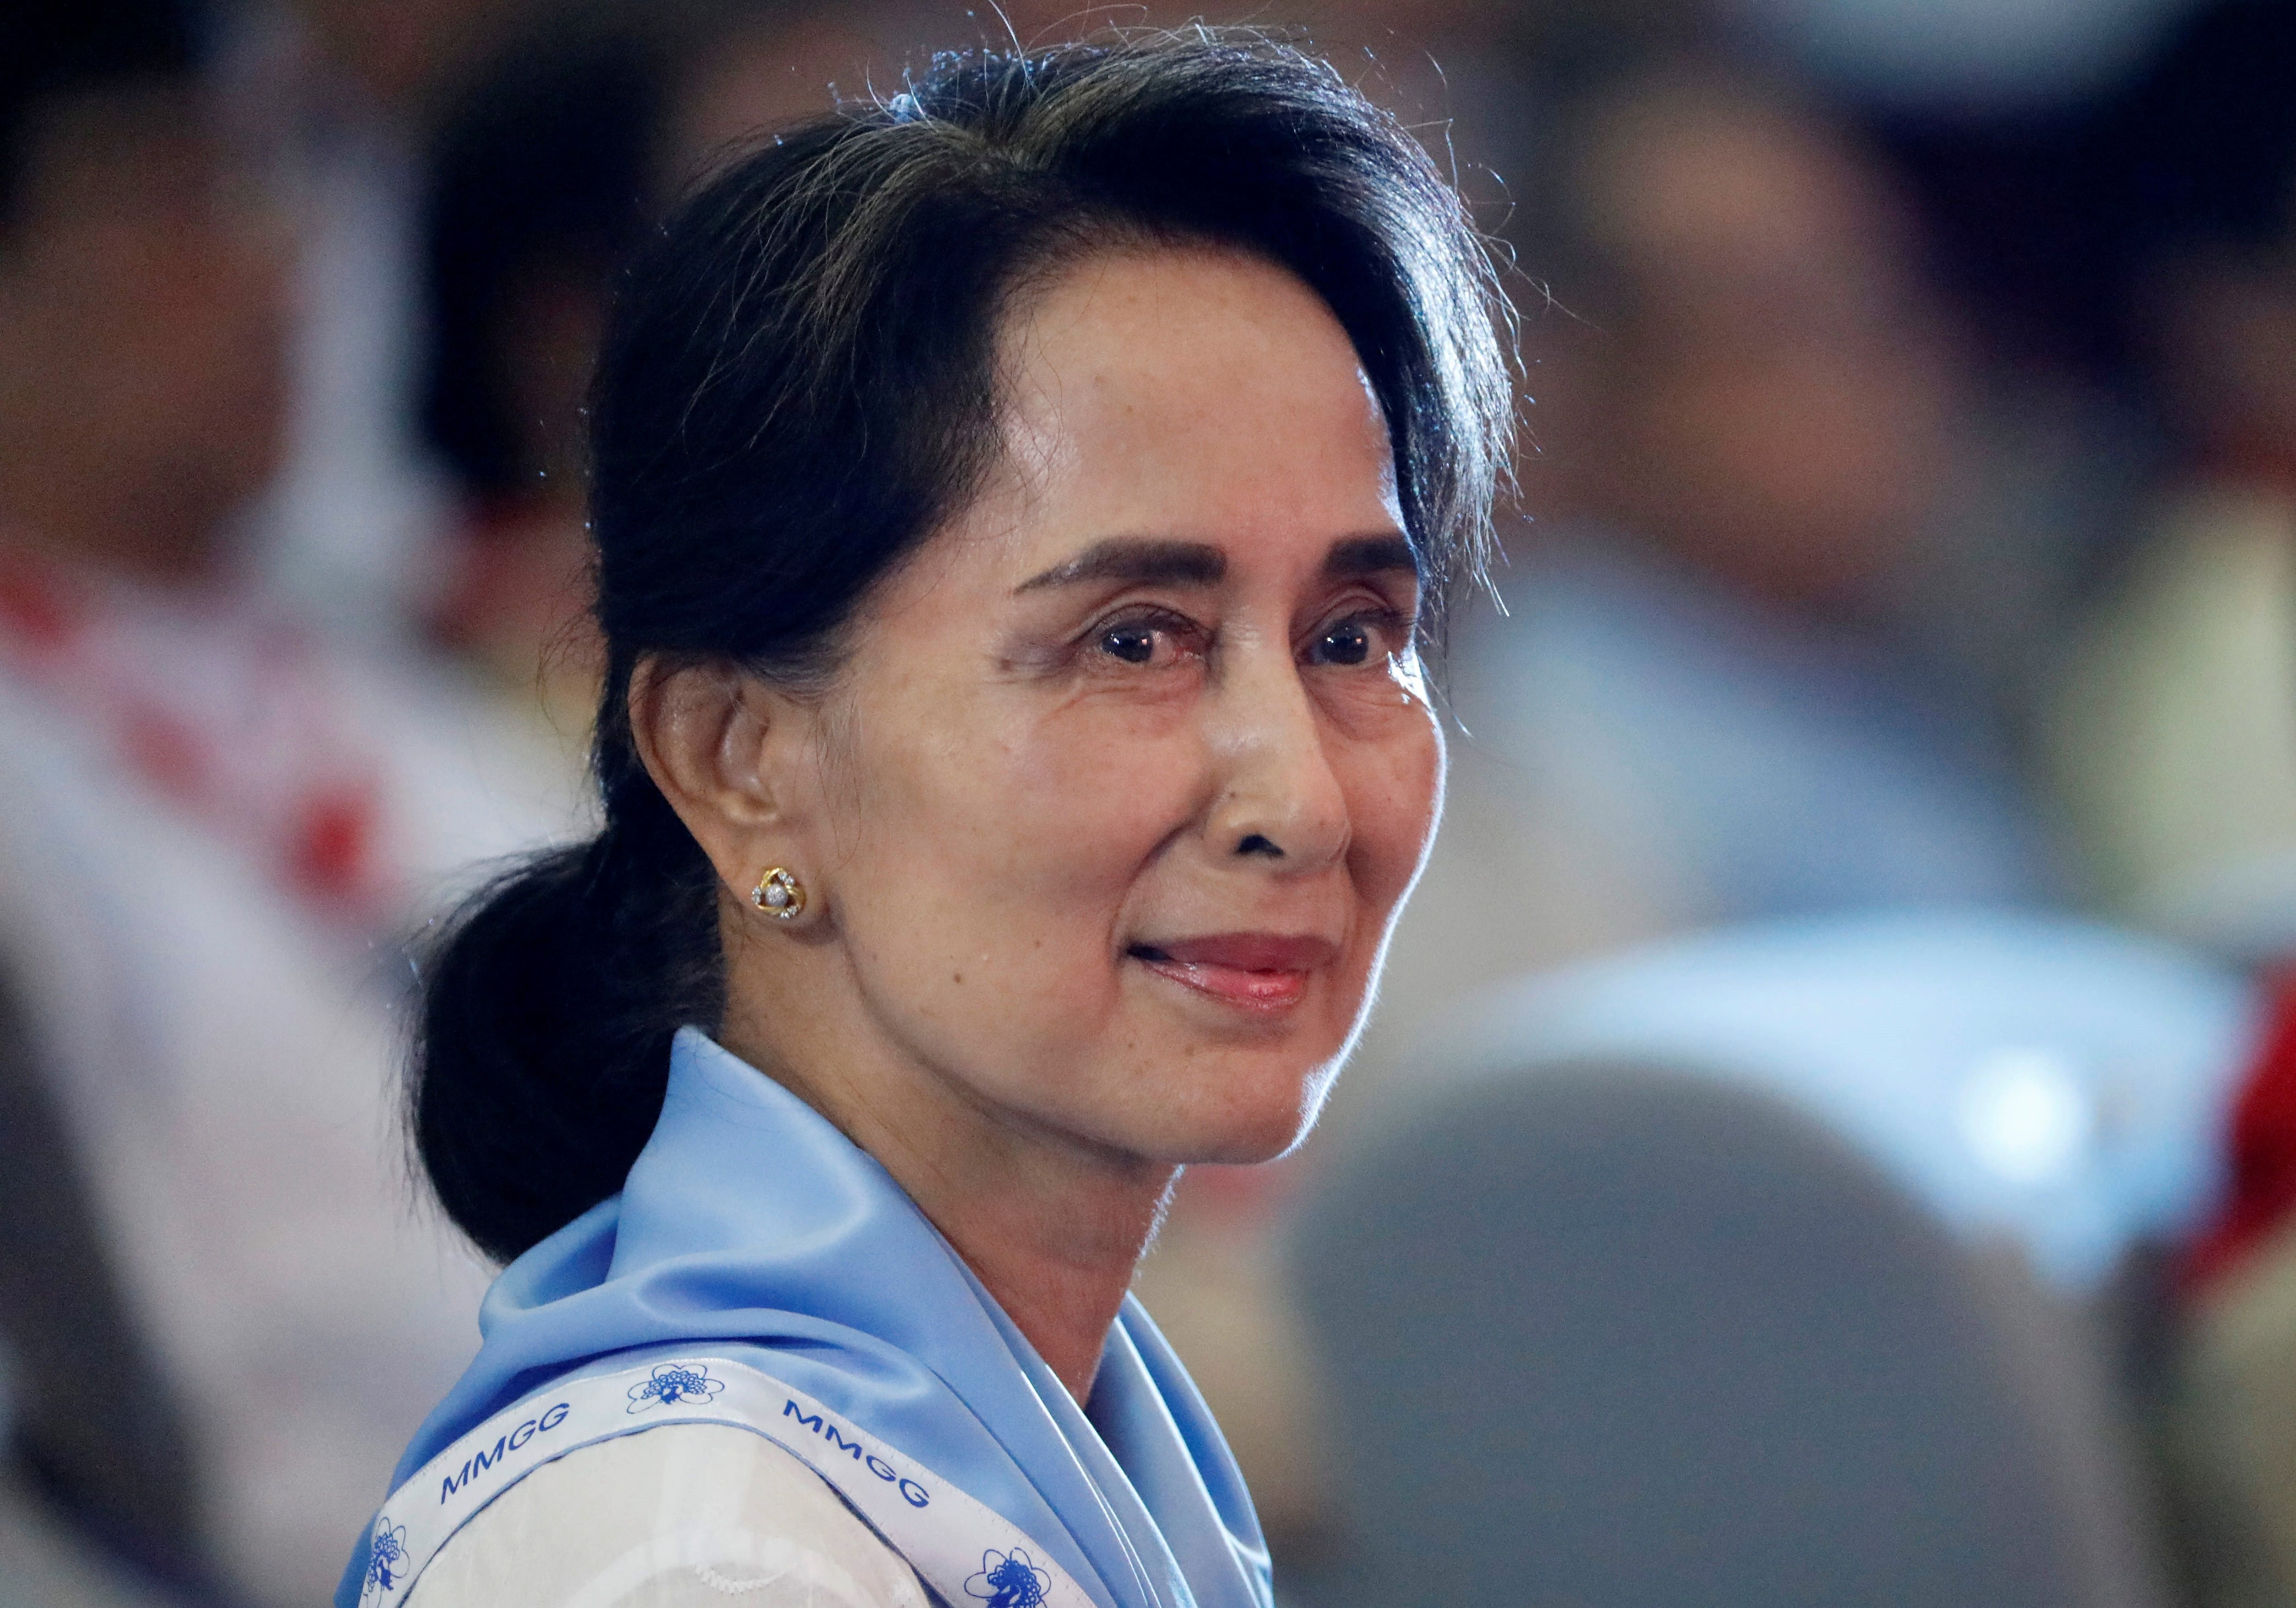 The overthrown Burmese leader Aung San Suu Kyi